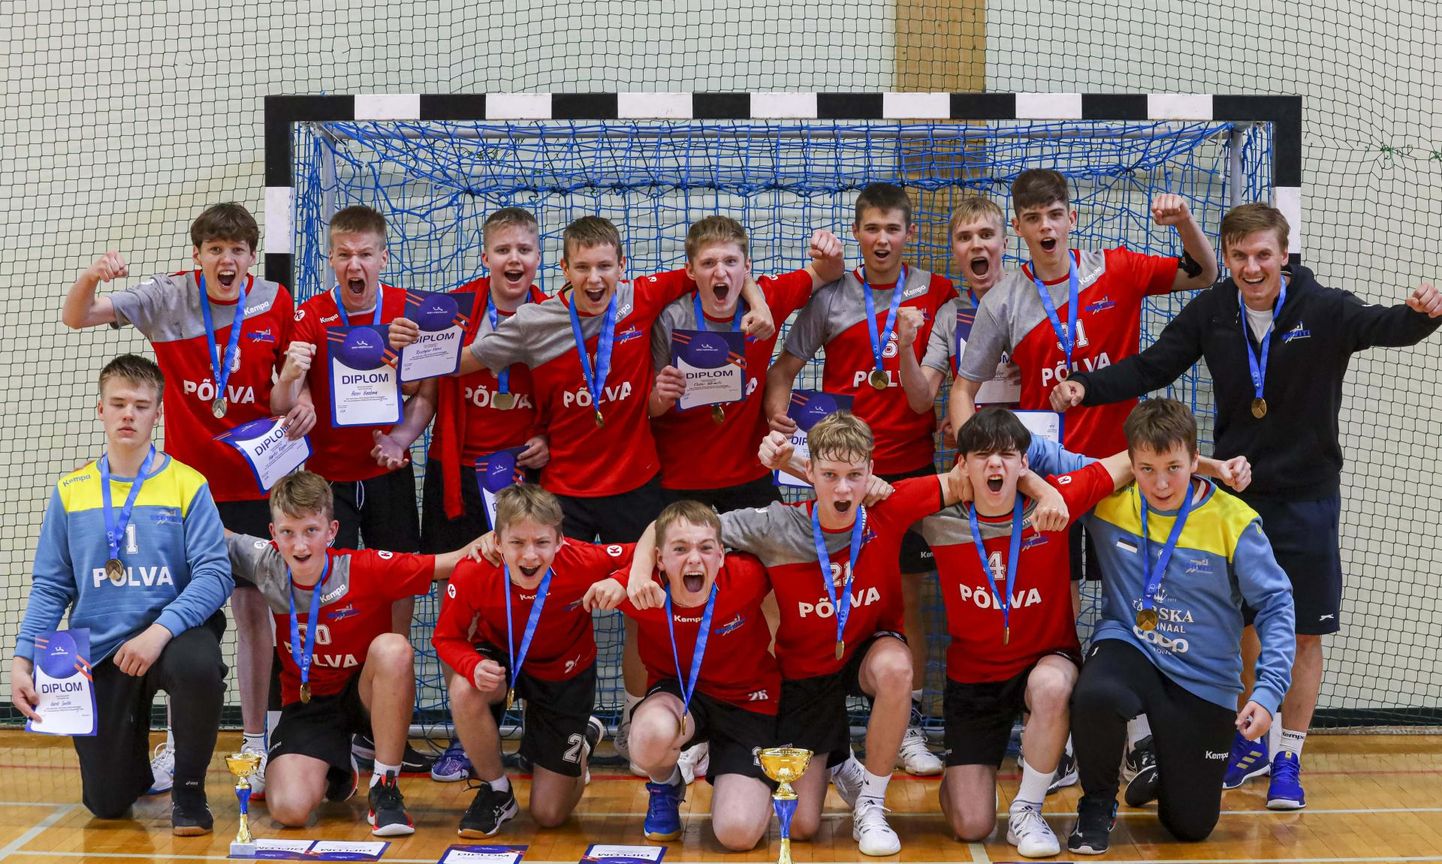 Eesti noormeeste C-vanuseklassi meister käsipallis on Põlva spordikooli esindus.